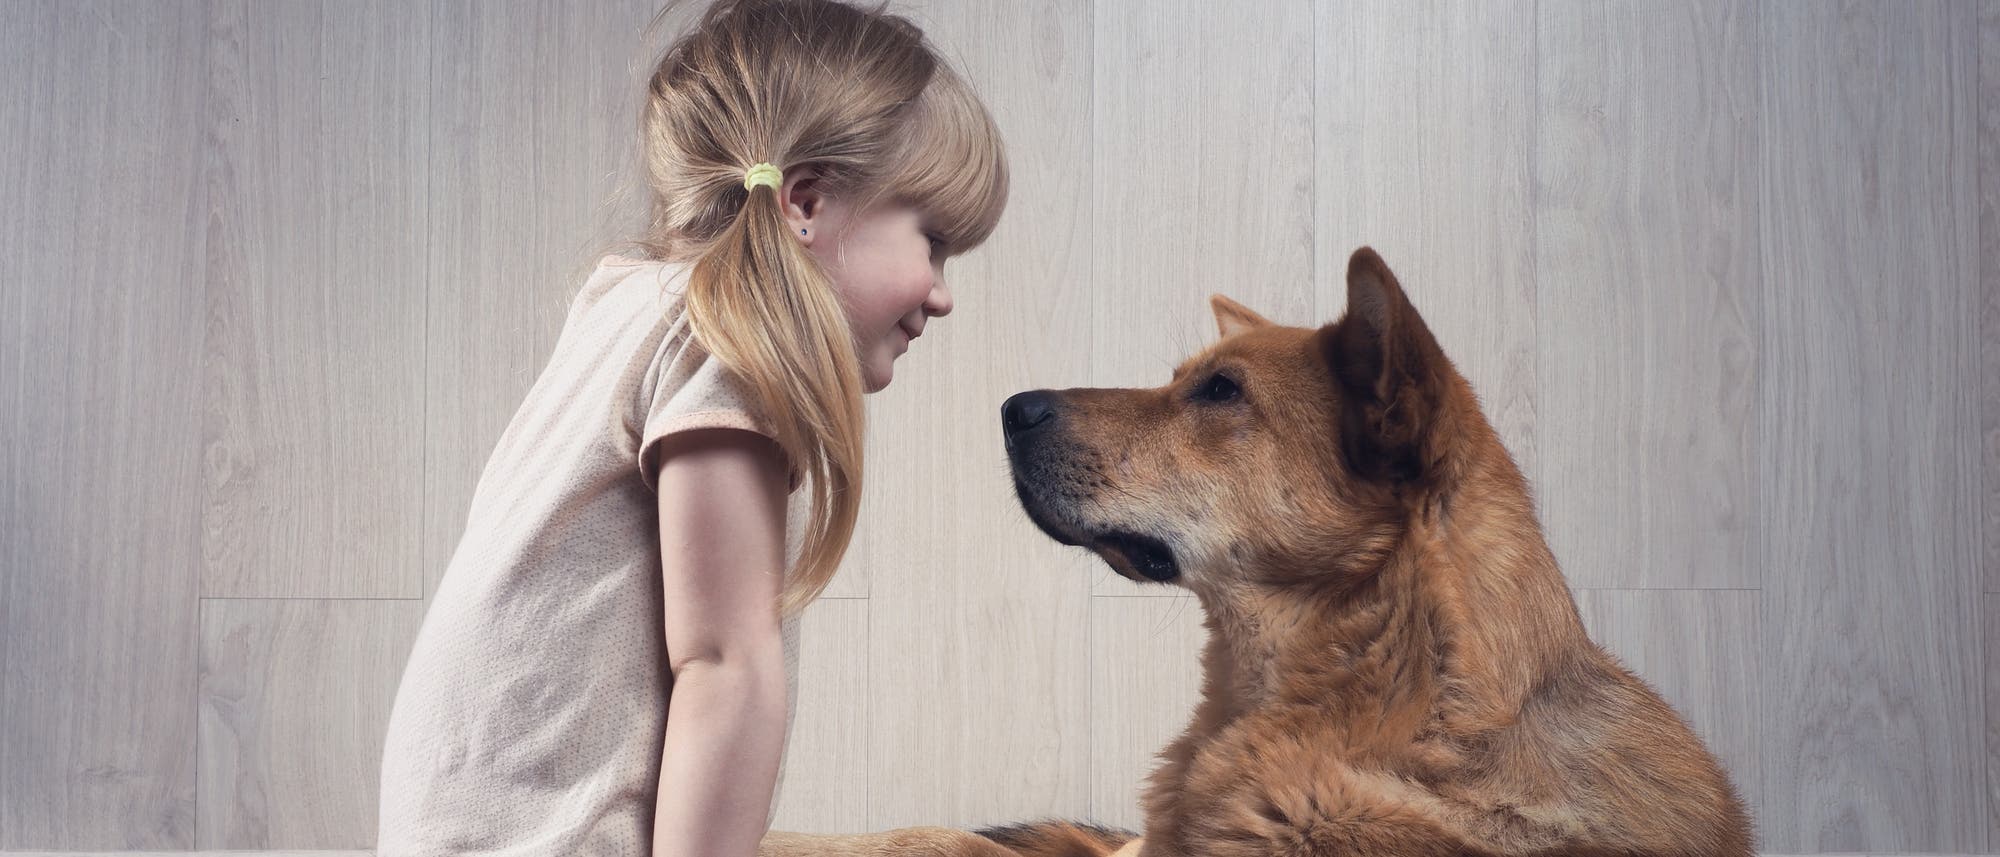 Ein Mädchen und ihr Hund sitzen sich gegenüber und schauen einander an.